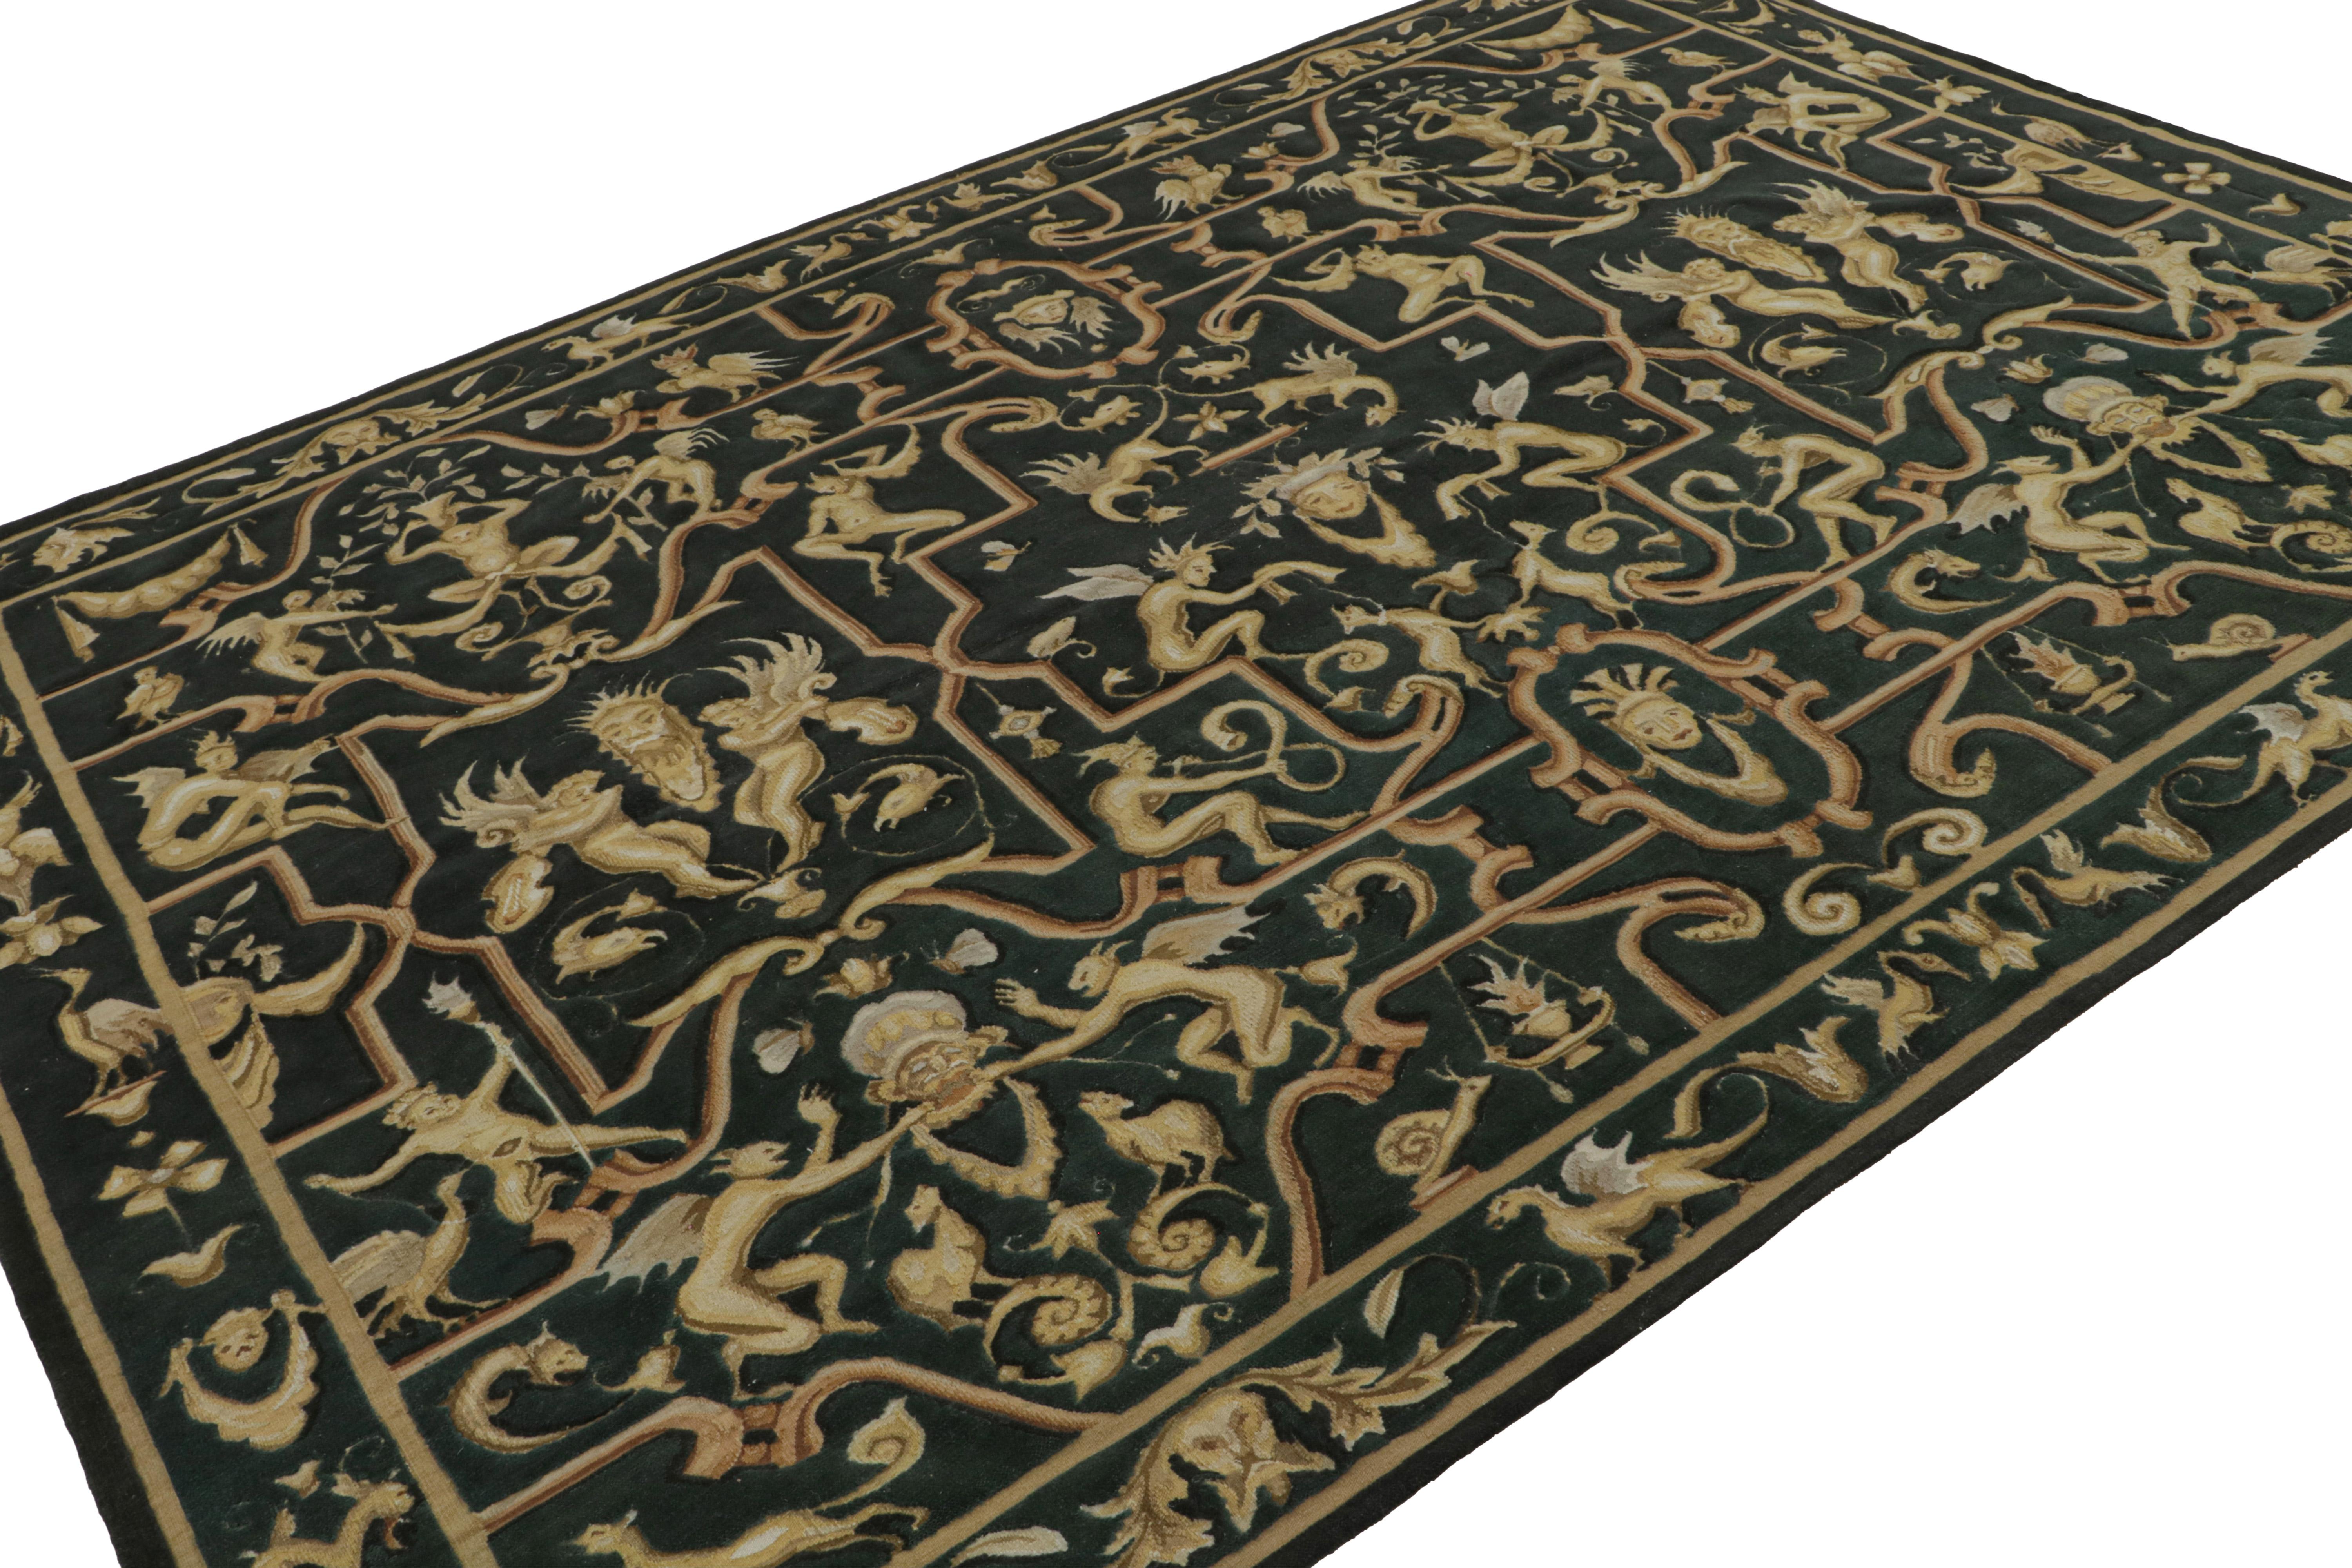 Dieser 8x11 große europäische Flachgewebe-Teppich aus handgeknüpfter Wolle in dunklem Teal zeigt eine Vielzahl von menschlichen, tierischen und mythologischen Figuren in Gold. Dieses königliche Design wurde von einem Tudor-Teppich und einem